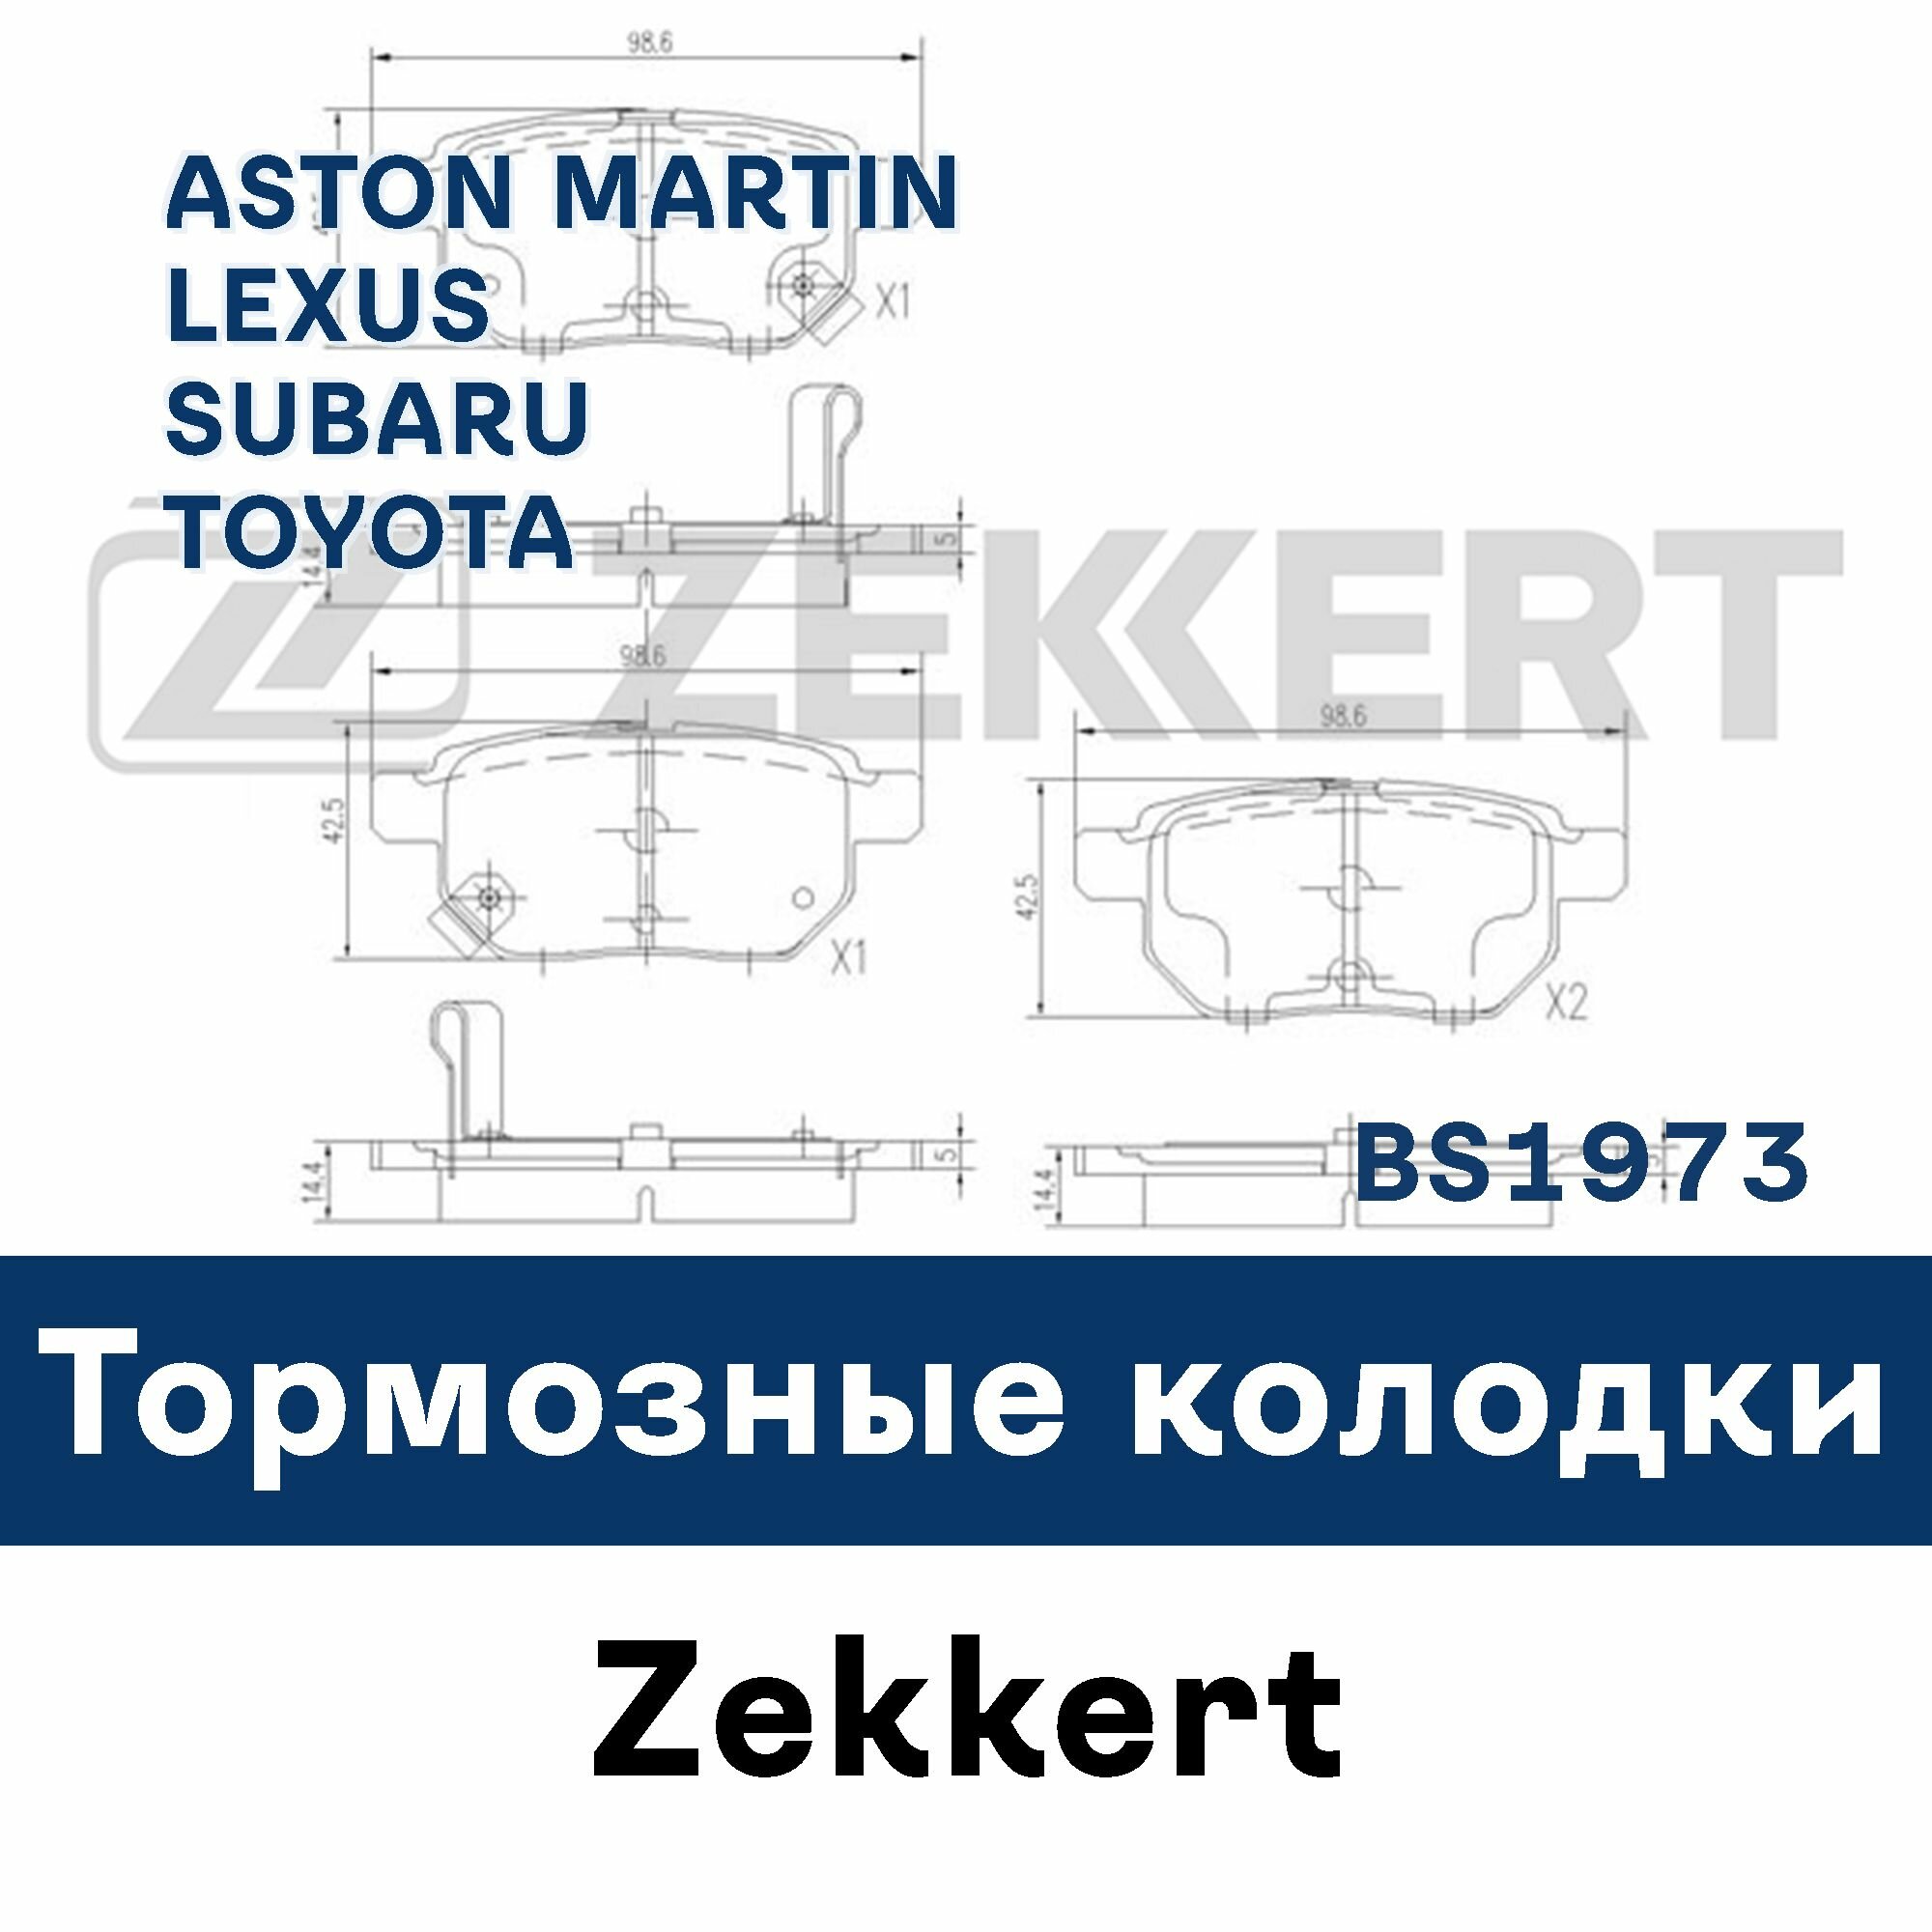 Тормозные колодки для ASTON MARTIN, LEXUS, SUBARU, TOYOTA BS1973 ZEKKERT